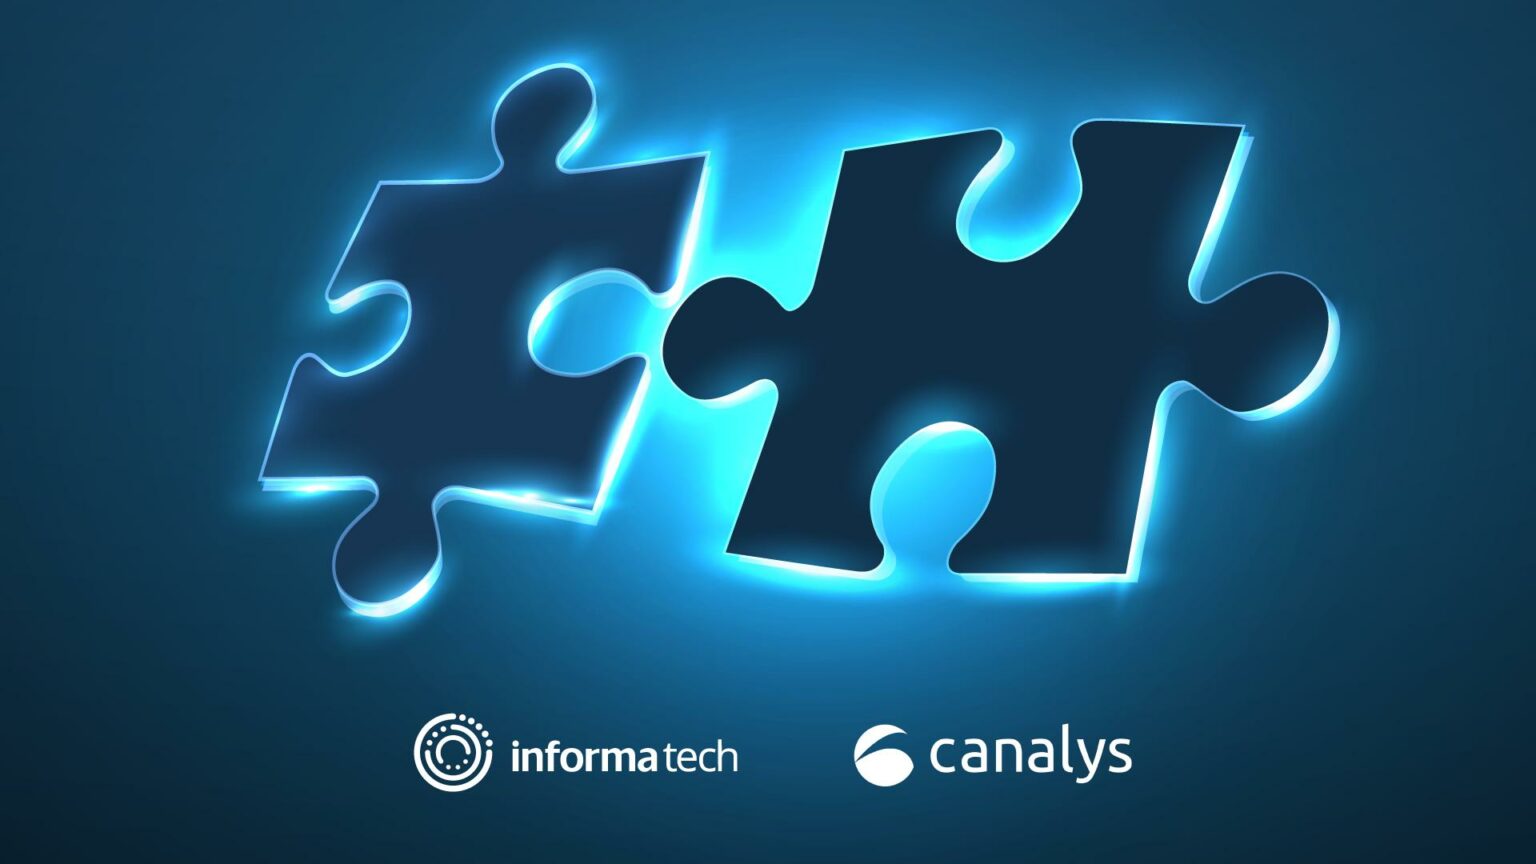 Informa Tech, marktonderzoeker  voor de wereldwijde zakelijke technologiegemeenschap, heeft Canalys overgenomen. Door de overname breidt Informa Tech haar Omdia-onderzoekscapaciteiten verder uit op het gebied van Channel (distributeurs, wederverkopers met toegevoegde waarde, systeemintegratoren en managed service providers) en Mobility (consumenten- en zakelijke apparaten), terwijl een wereldwijd platform wordt gecreëerd voor netwerken in het Channel door zowel Canalys als Informa Tech's franchises voor Channel-evenementen samen te brengen. 